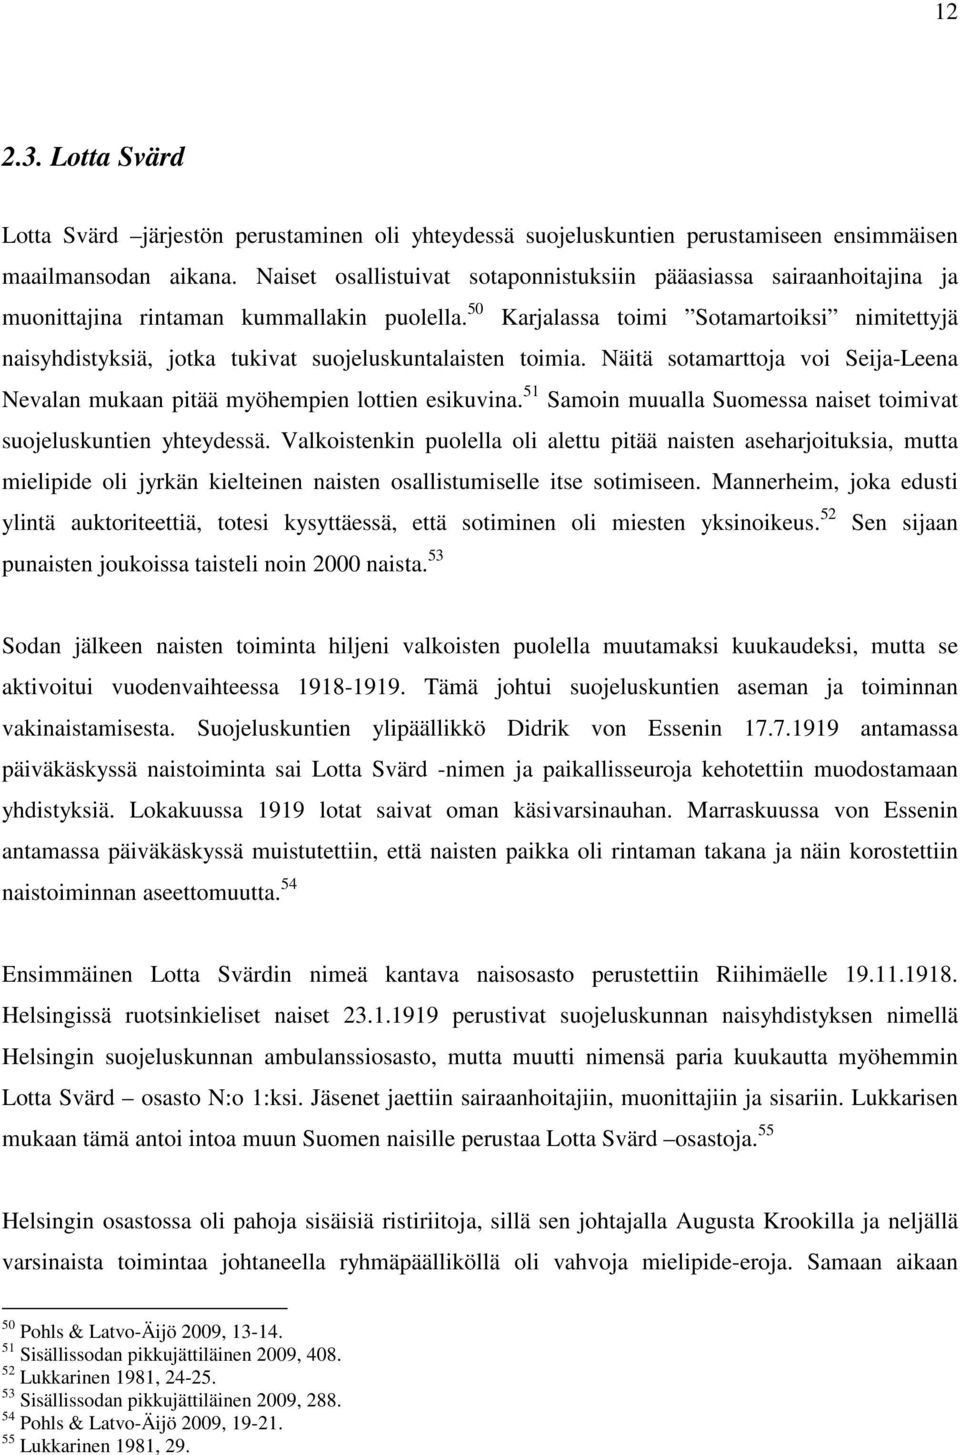 50 Karjalassa toimi Sotamartoiksi nimitettyjä naisyhdistyksiä, jotka tukivat suojeluskuntalaisten toimia. Näitä sotamarttoja voi Seija-Leena Nevalan mukaan pitää myöhempien lottien esikuvina.